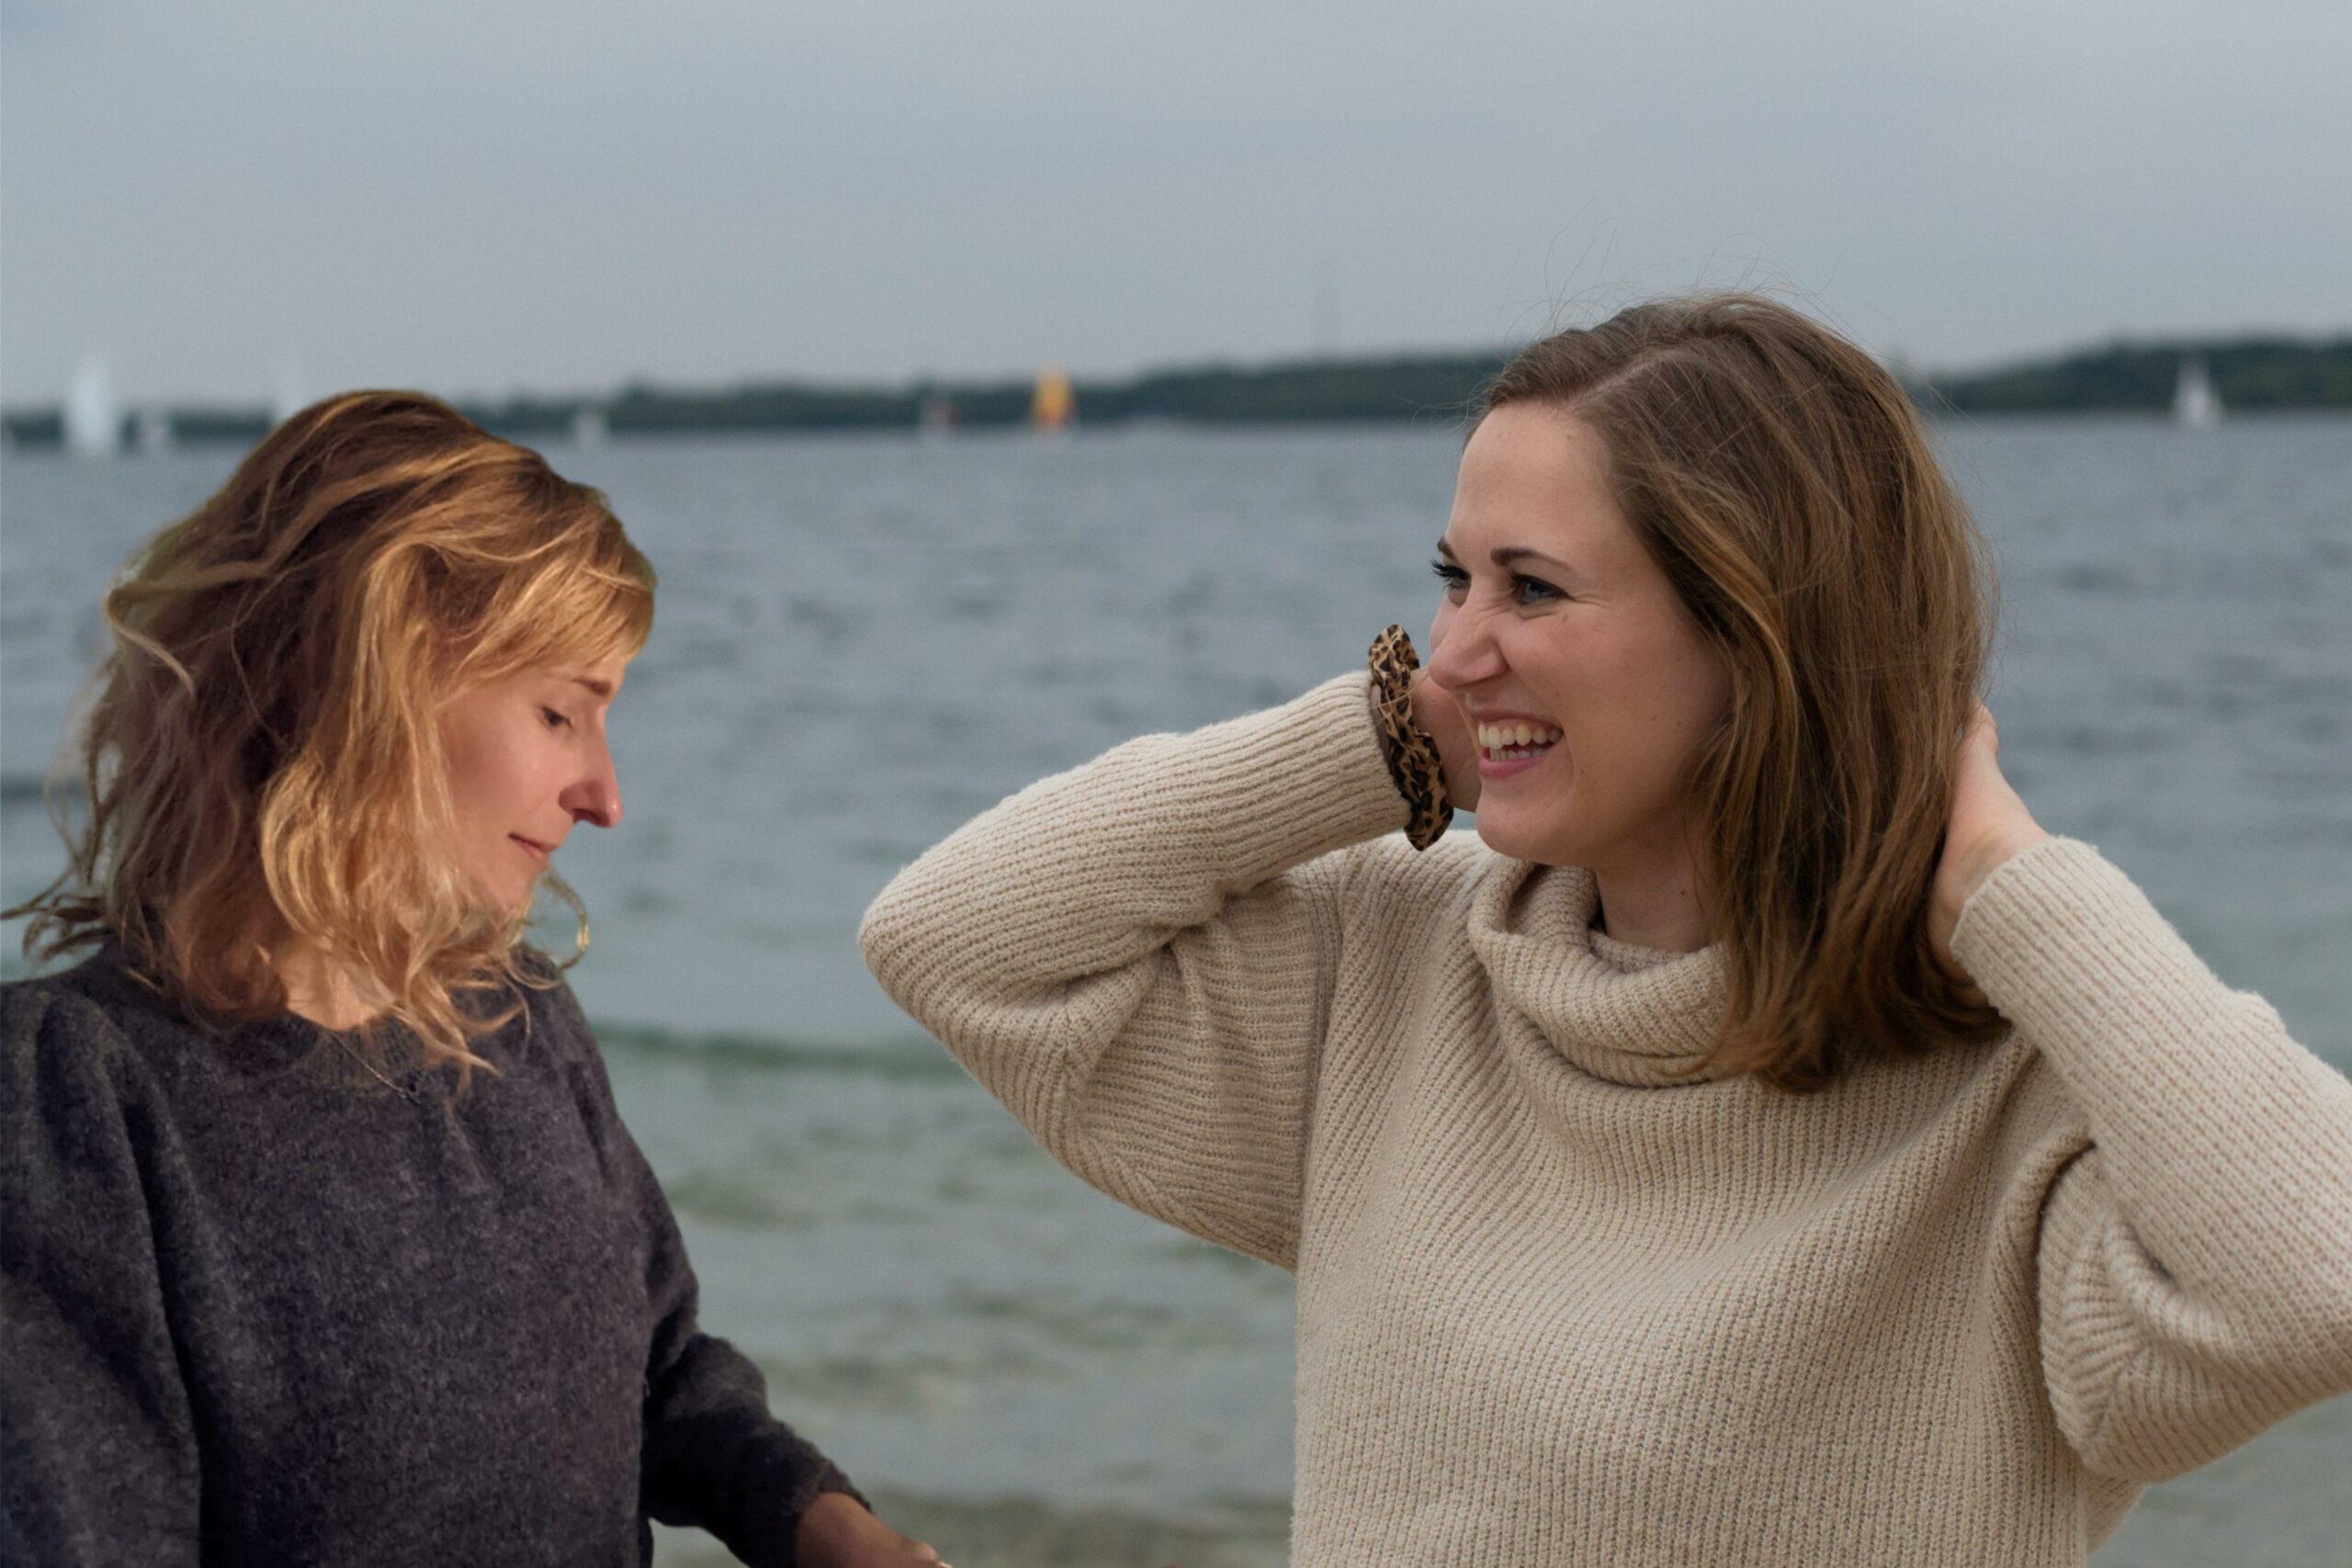 Das Bild zeigt einen Teil der Story von Anya und Fine von True Good Things. Die beiden jungen Frauen stehen dabei vor einem See und schauen sich an.